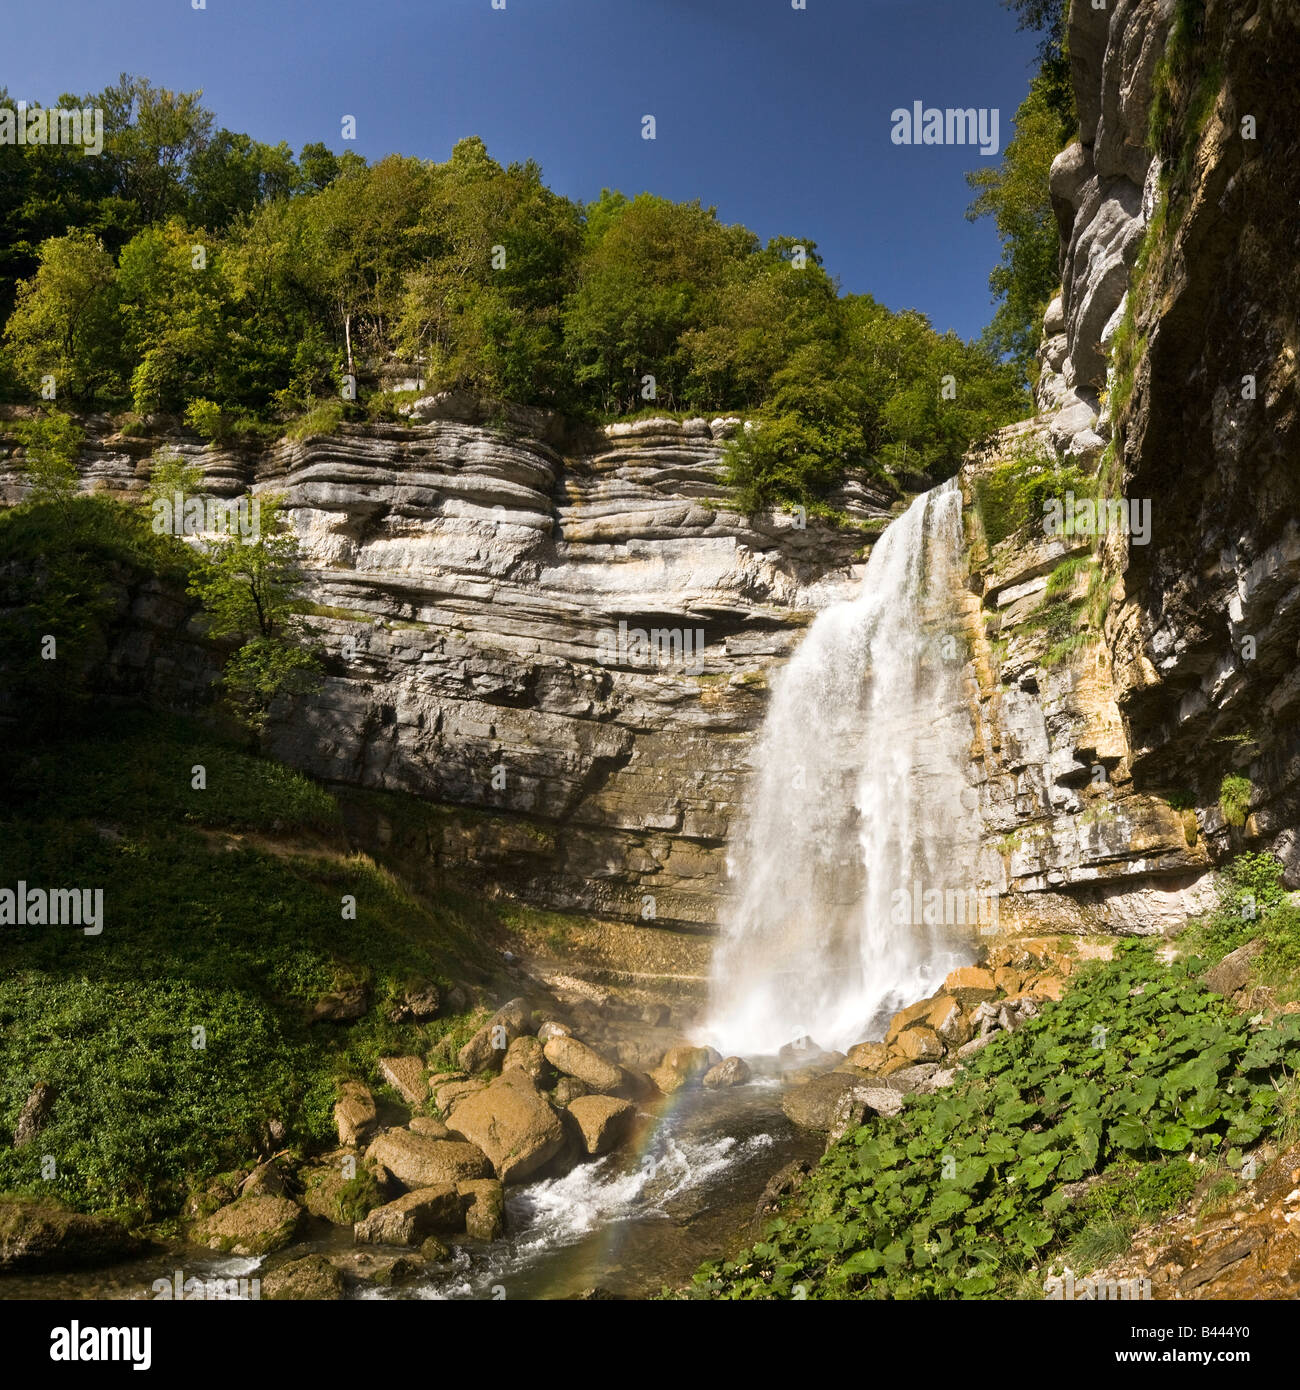 La cascata di hedgehog: la caduta del "Big Jump' (Jura - Francia). Cascata du Hérisson : la scivolo du Grand Saut (Jura - Francia) Foto Stock